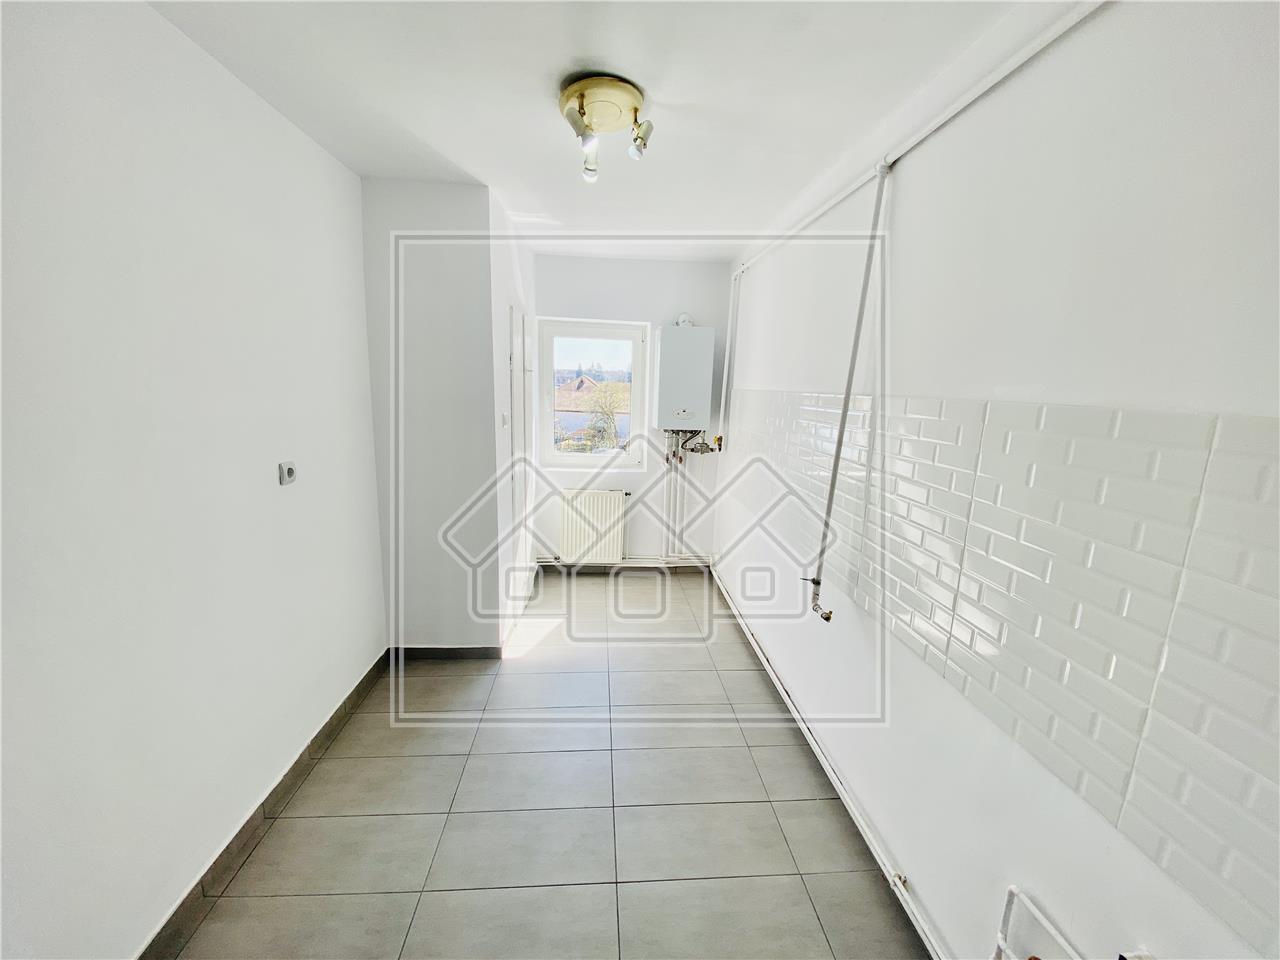 Apartament de vanzare in Sibiu -3 camere, balcon si pivnita - Terezian